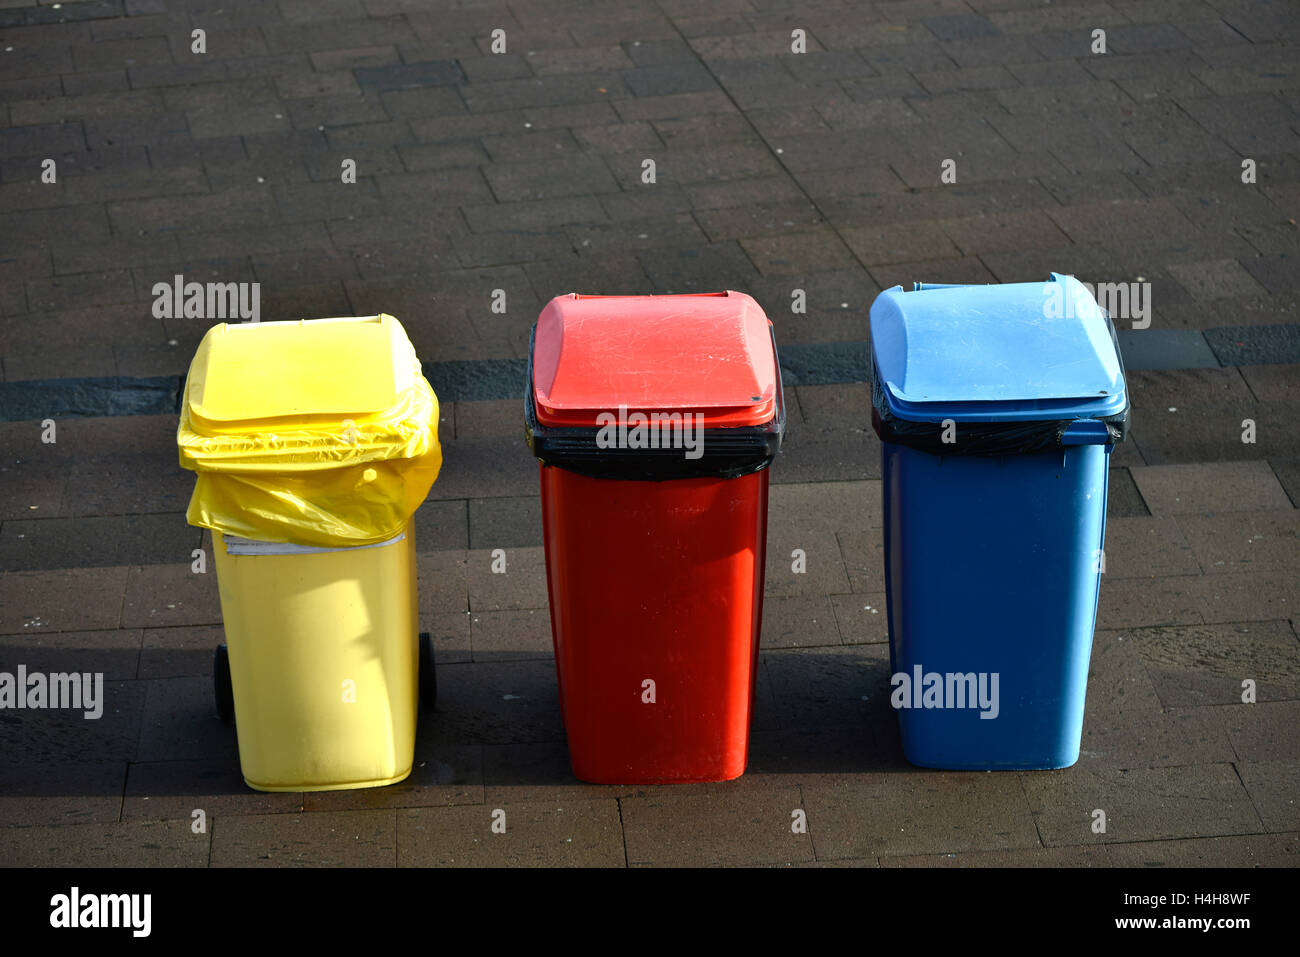 Poubelles de couleur, rouge, jaune, bleu, la séparation des déchets, Tenerife, Canaries, Espagne Banque D'Images